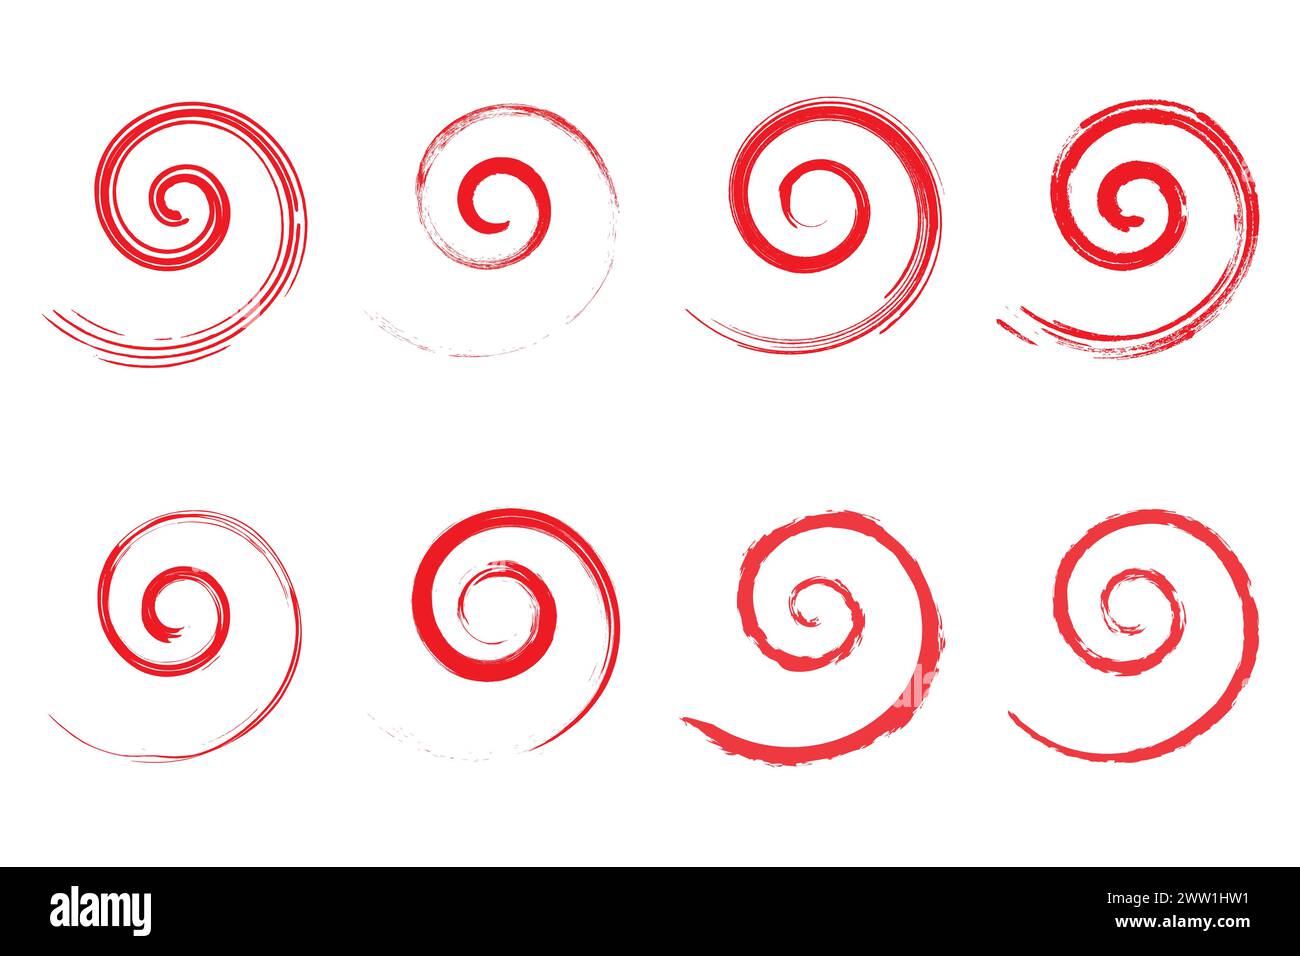 Icona a spirale texture grunge vintage in stile retrò, pennello vettoriale con simbolo in angoscia. Illustrazione Vettoriale